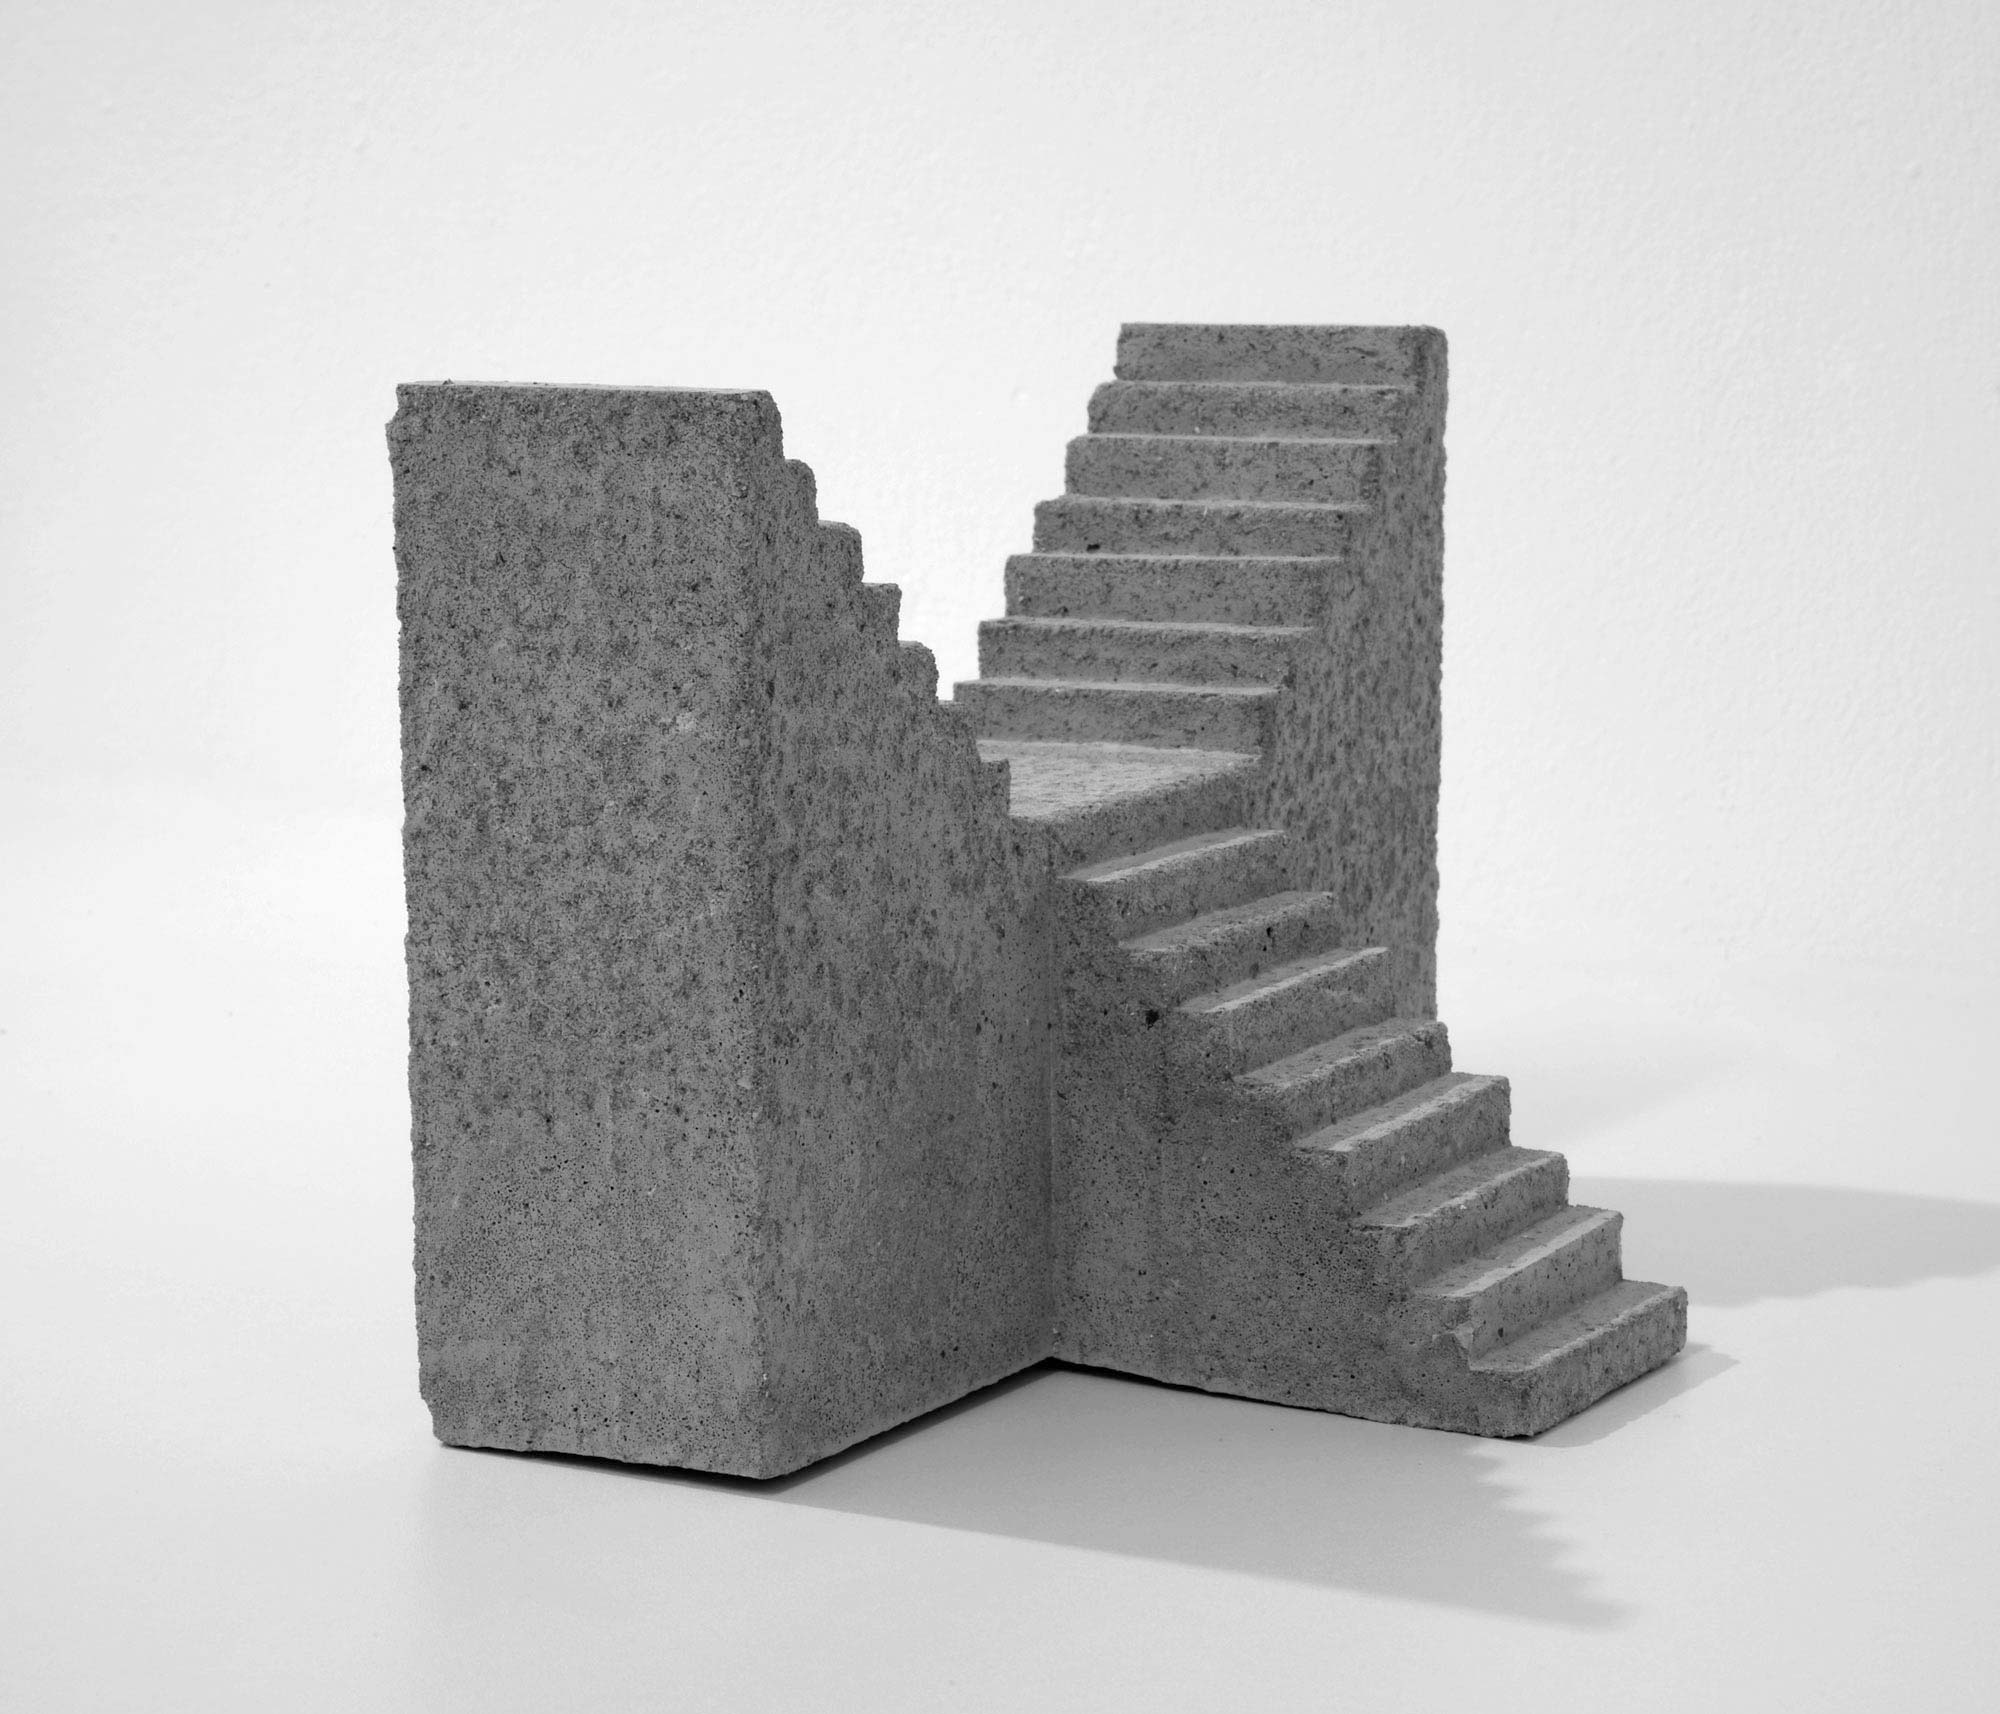 mattia listowski art design objet décoration sculpture béton moulage micro architecture maquette escalier simple double édition limitée numérotée signée paris bruxelles 2019